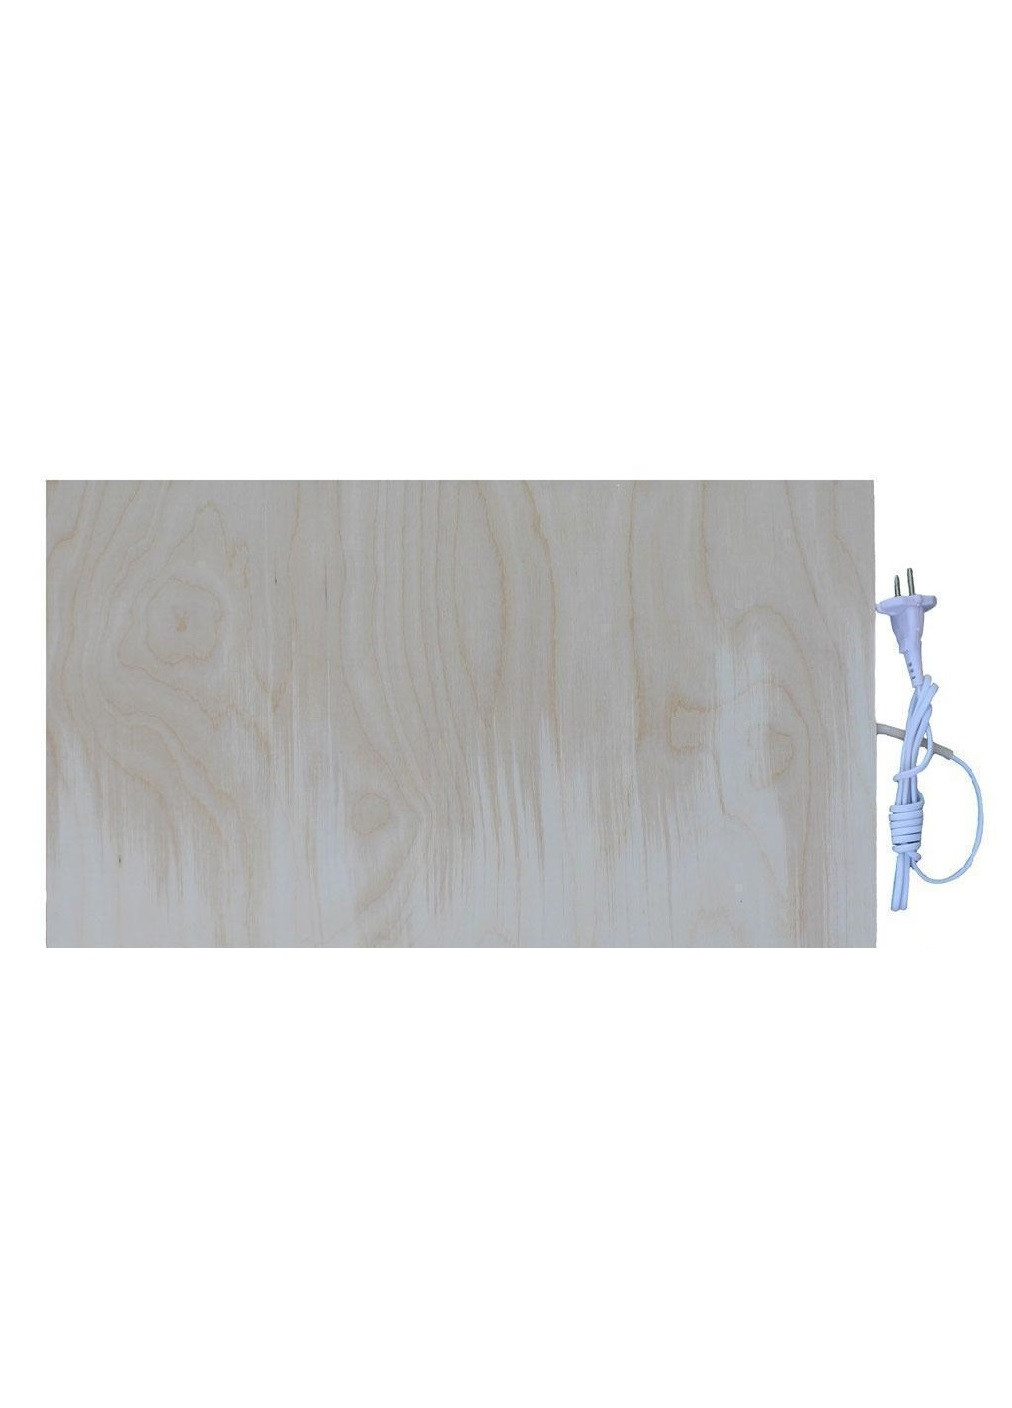 Инфракрасная подставка обогреватель панель доска грелка сушилка из дерева 80 Вт (473376-Prob) Unbranded (254537061)